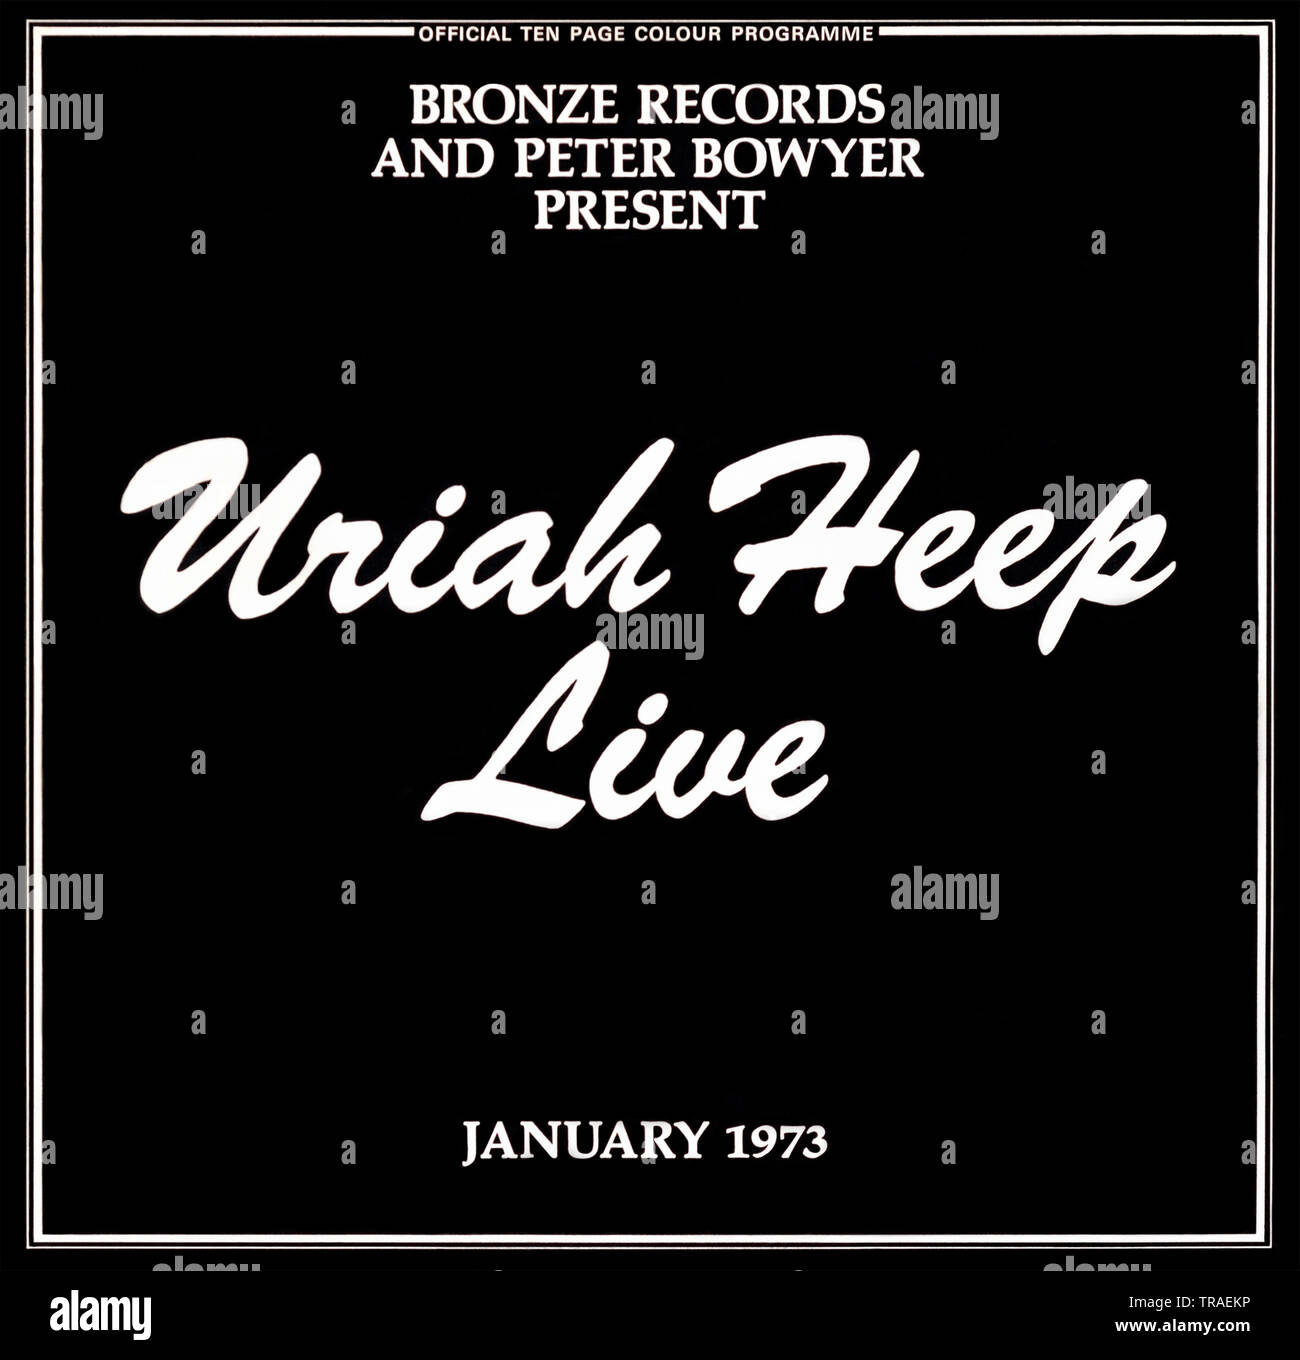 Uriah Heep - pochette originale de l'album en vinyle - Uriah Heep Live - 1973 Banque D'Images